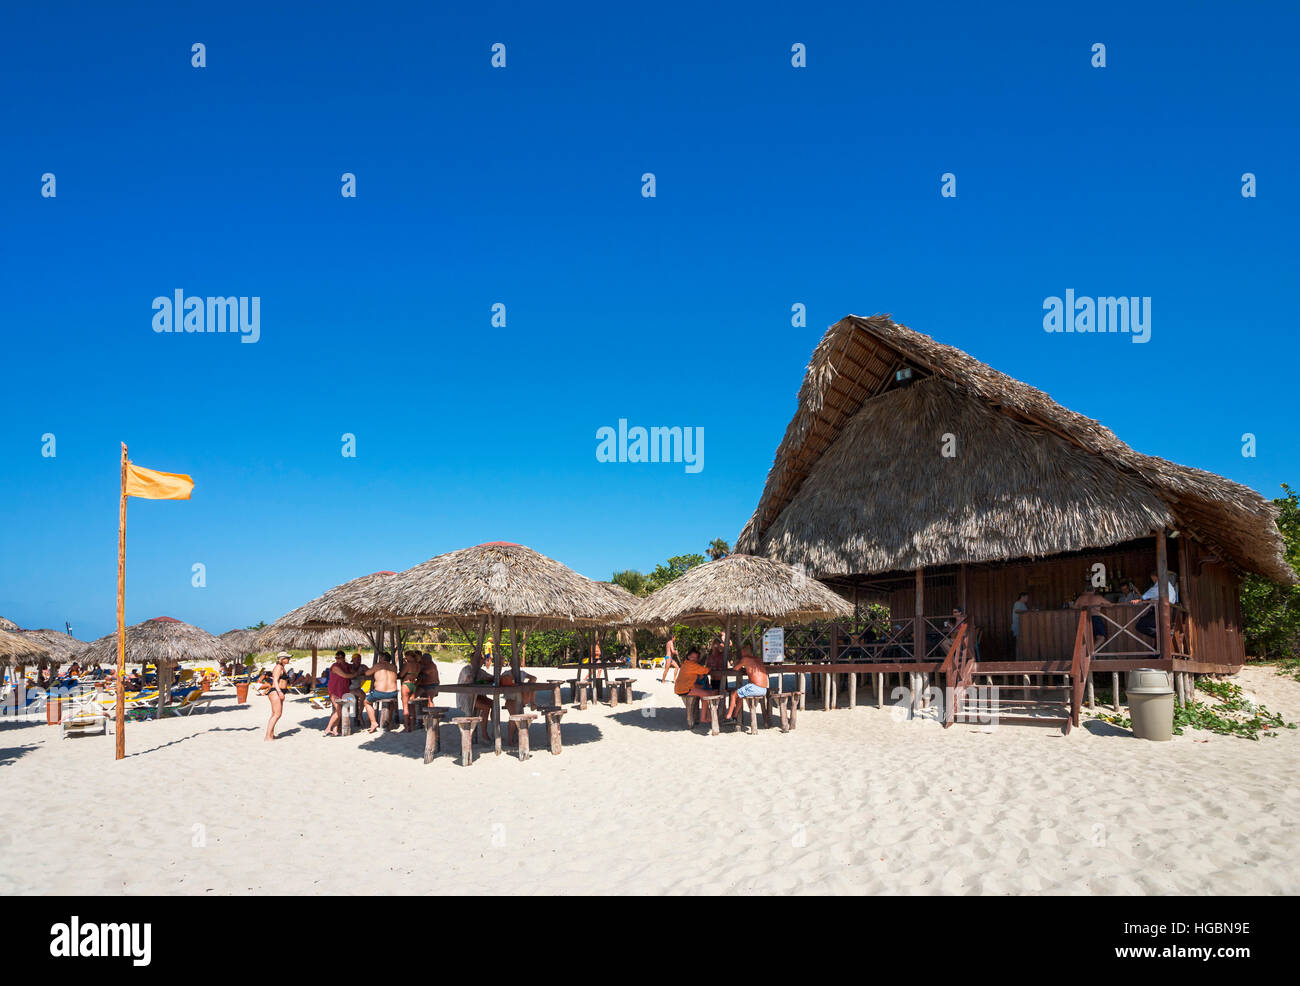 Spiaggia di Varadero, Cuba. La spiaggia e il bar sulla spiaggia. Foto Stock